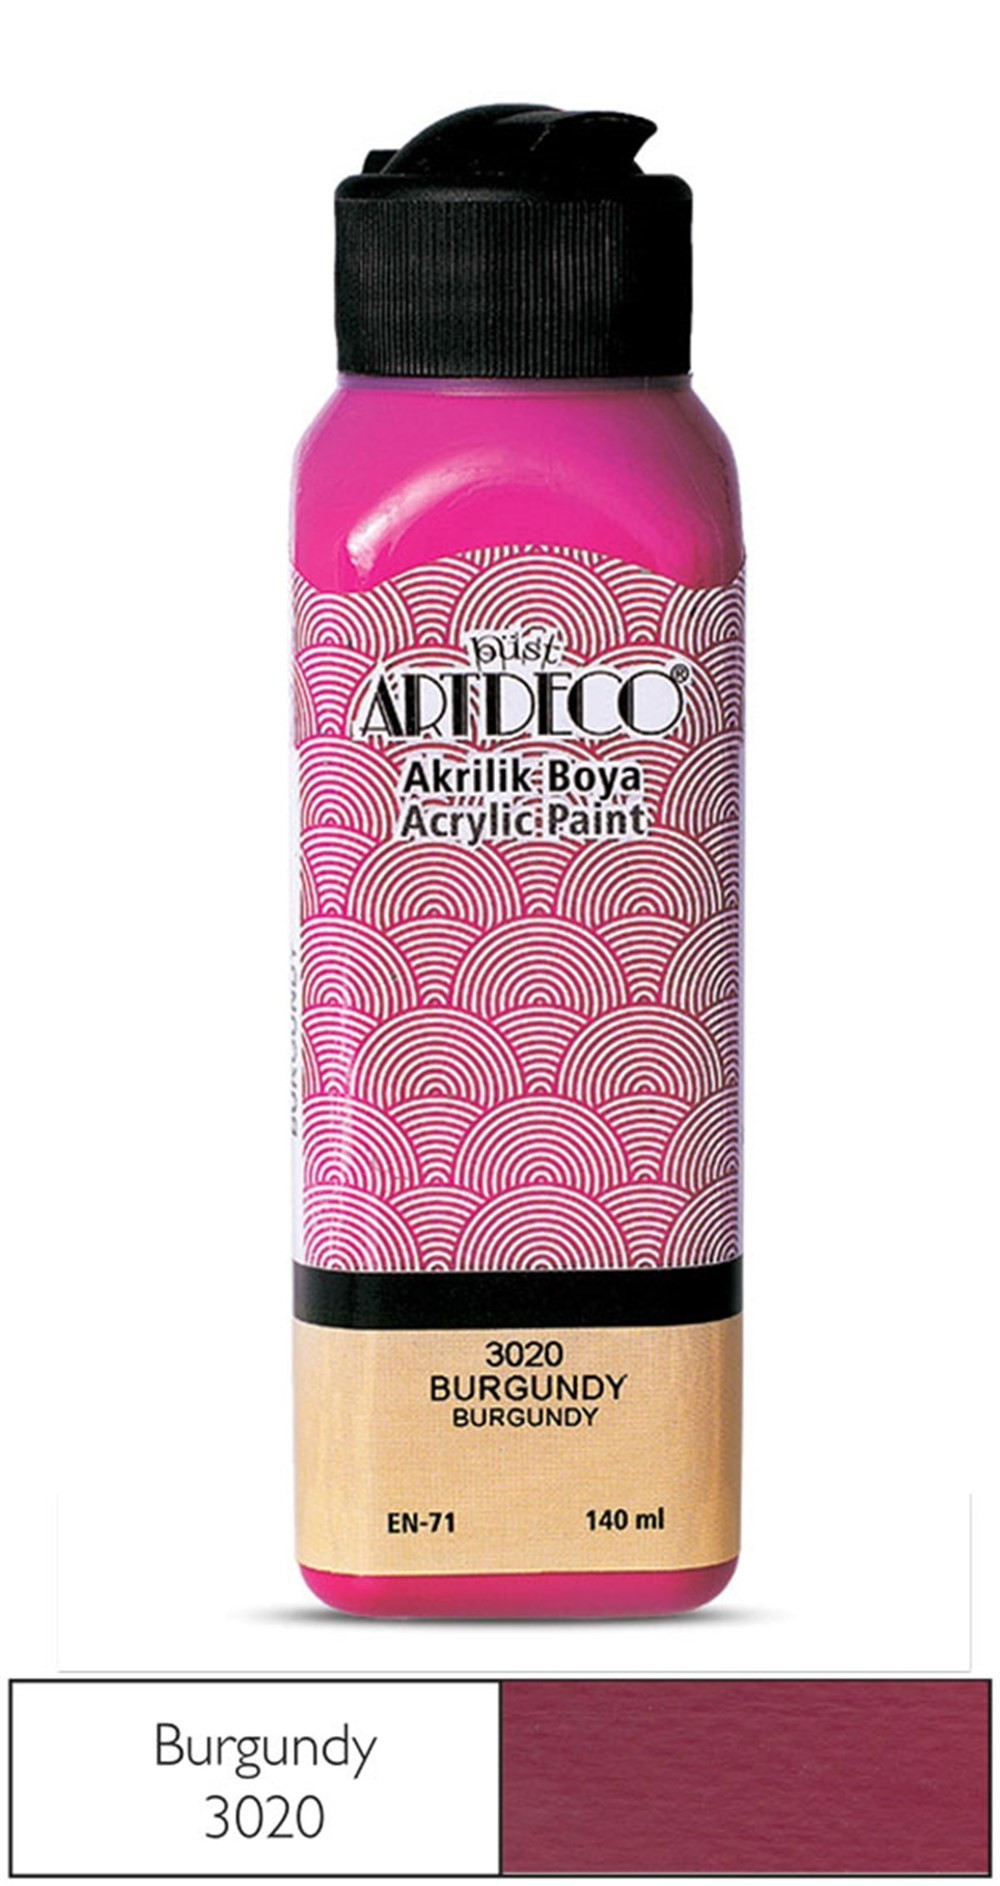 Artdeco Akrilik Boya 140 ml 3020 Burgundy